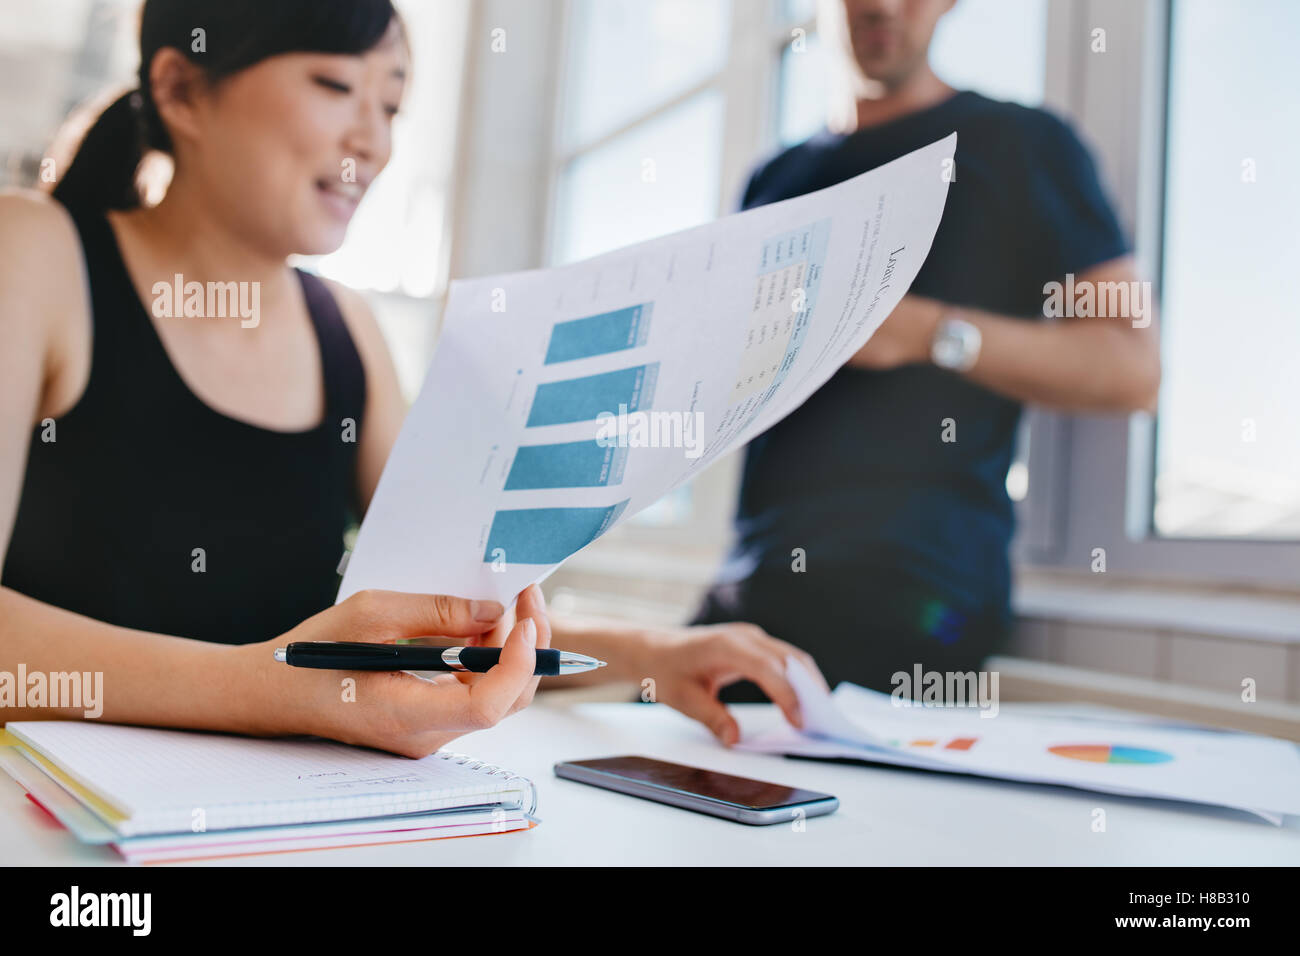 Frau mit männlicher Kollege im Hintergrund stehen Finanzanalyse im Büro zu tun. Asiatische Frauen halten Dokumente beim sittin Stockfoto